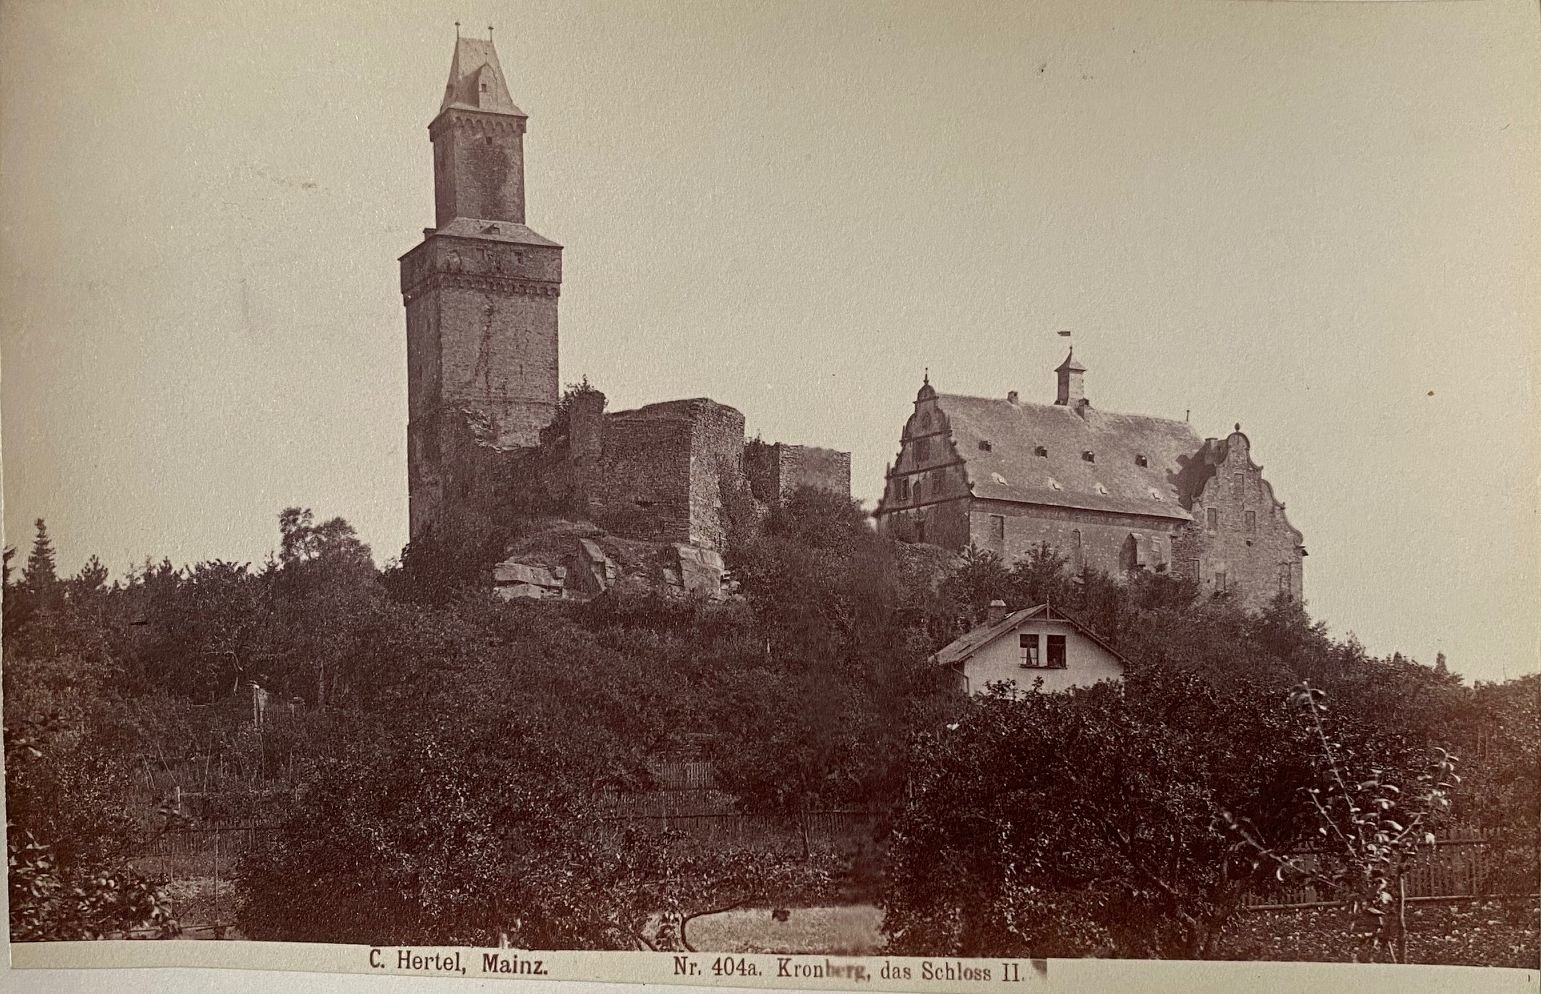 Fotografie, Carl Hertel No. 404a, Kronberg Schloss II, ca. 1885 (Taunus-Rhein-Main - Regionalgeschichtliche Sammlung Dr. Stefan Naas CC BY-NC-SA)